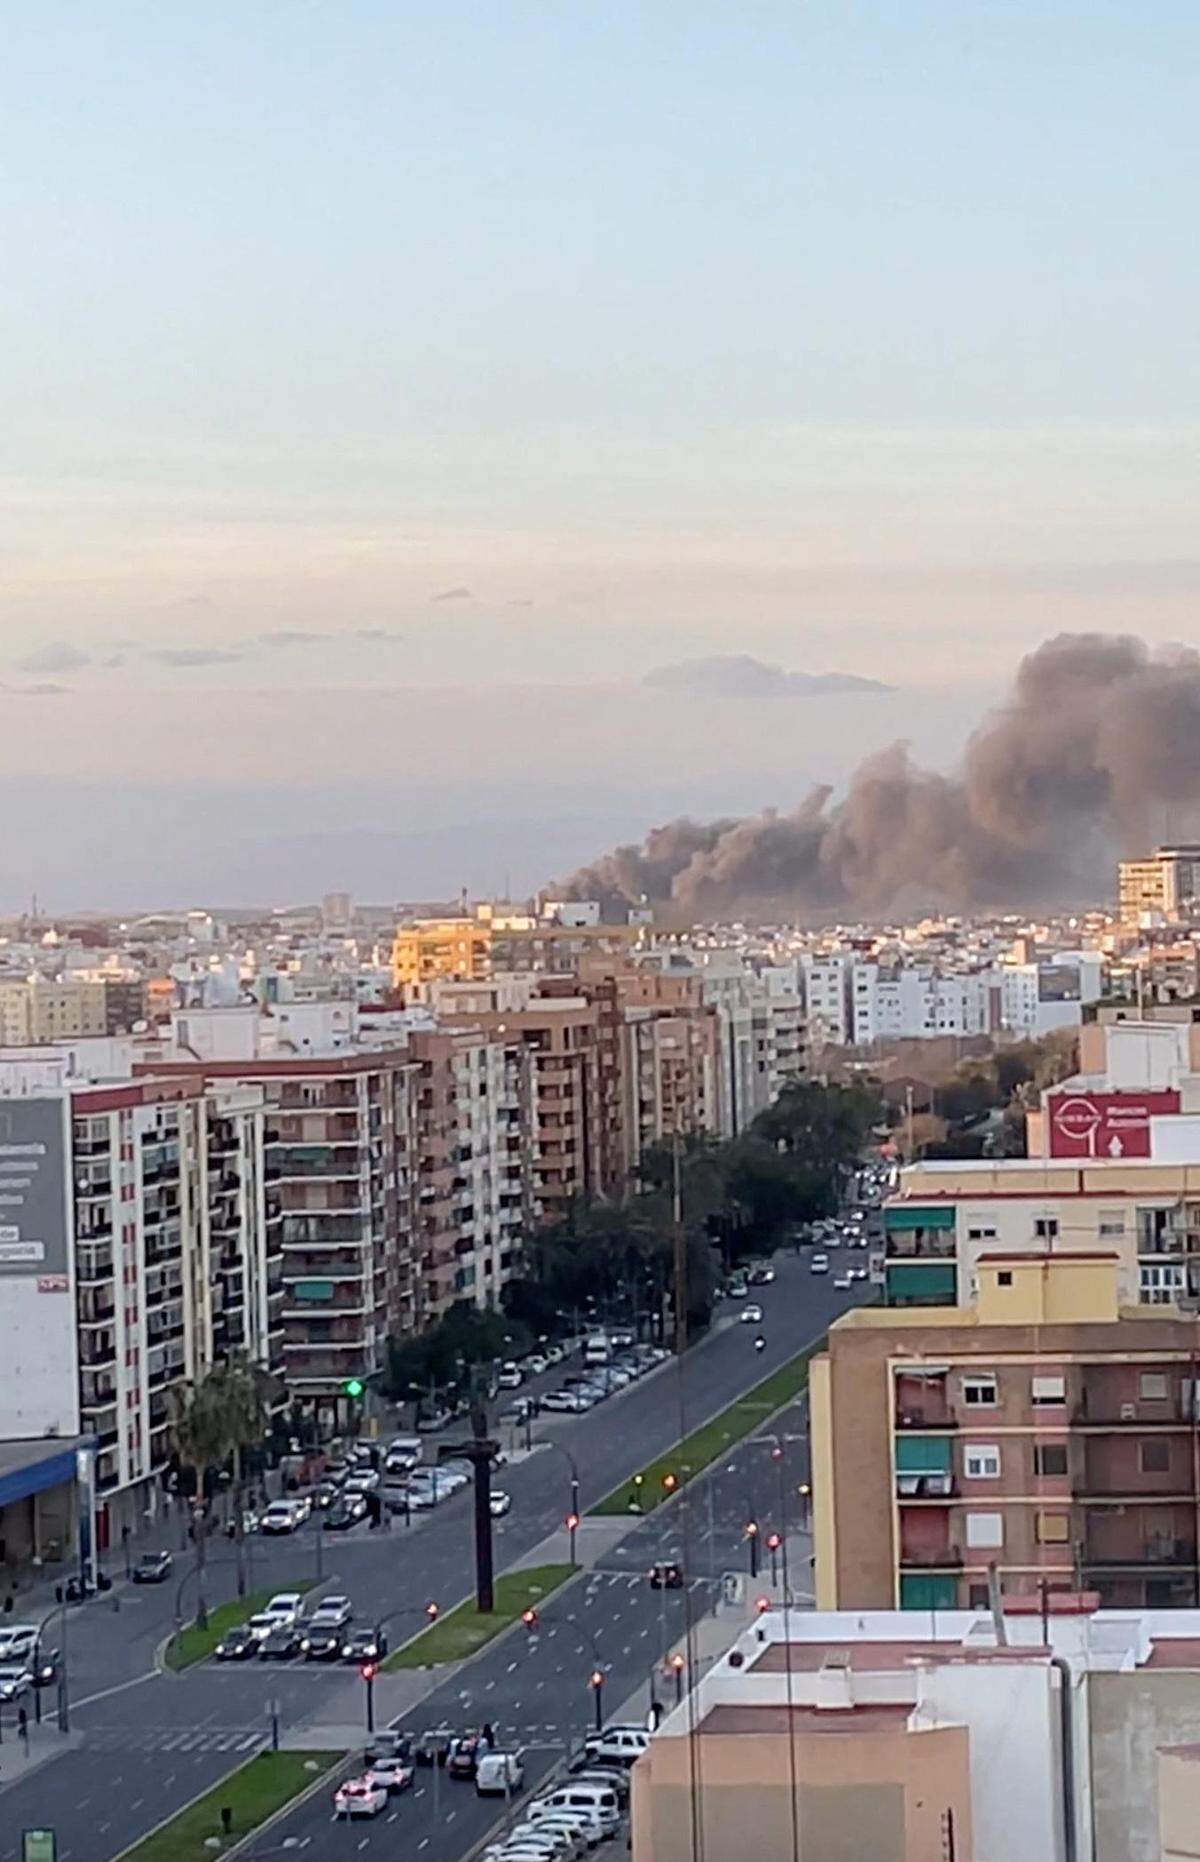 Bilder vom Brand in Valencia.